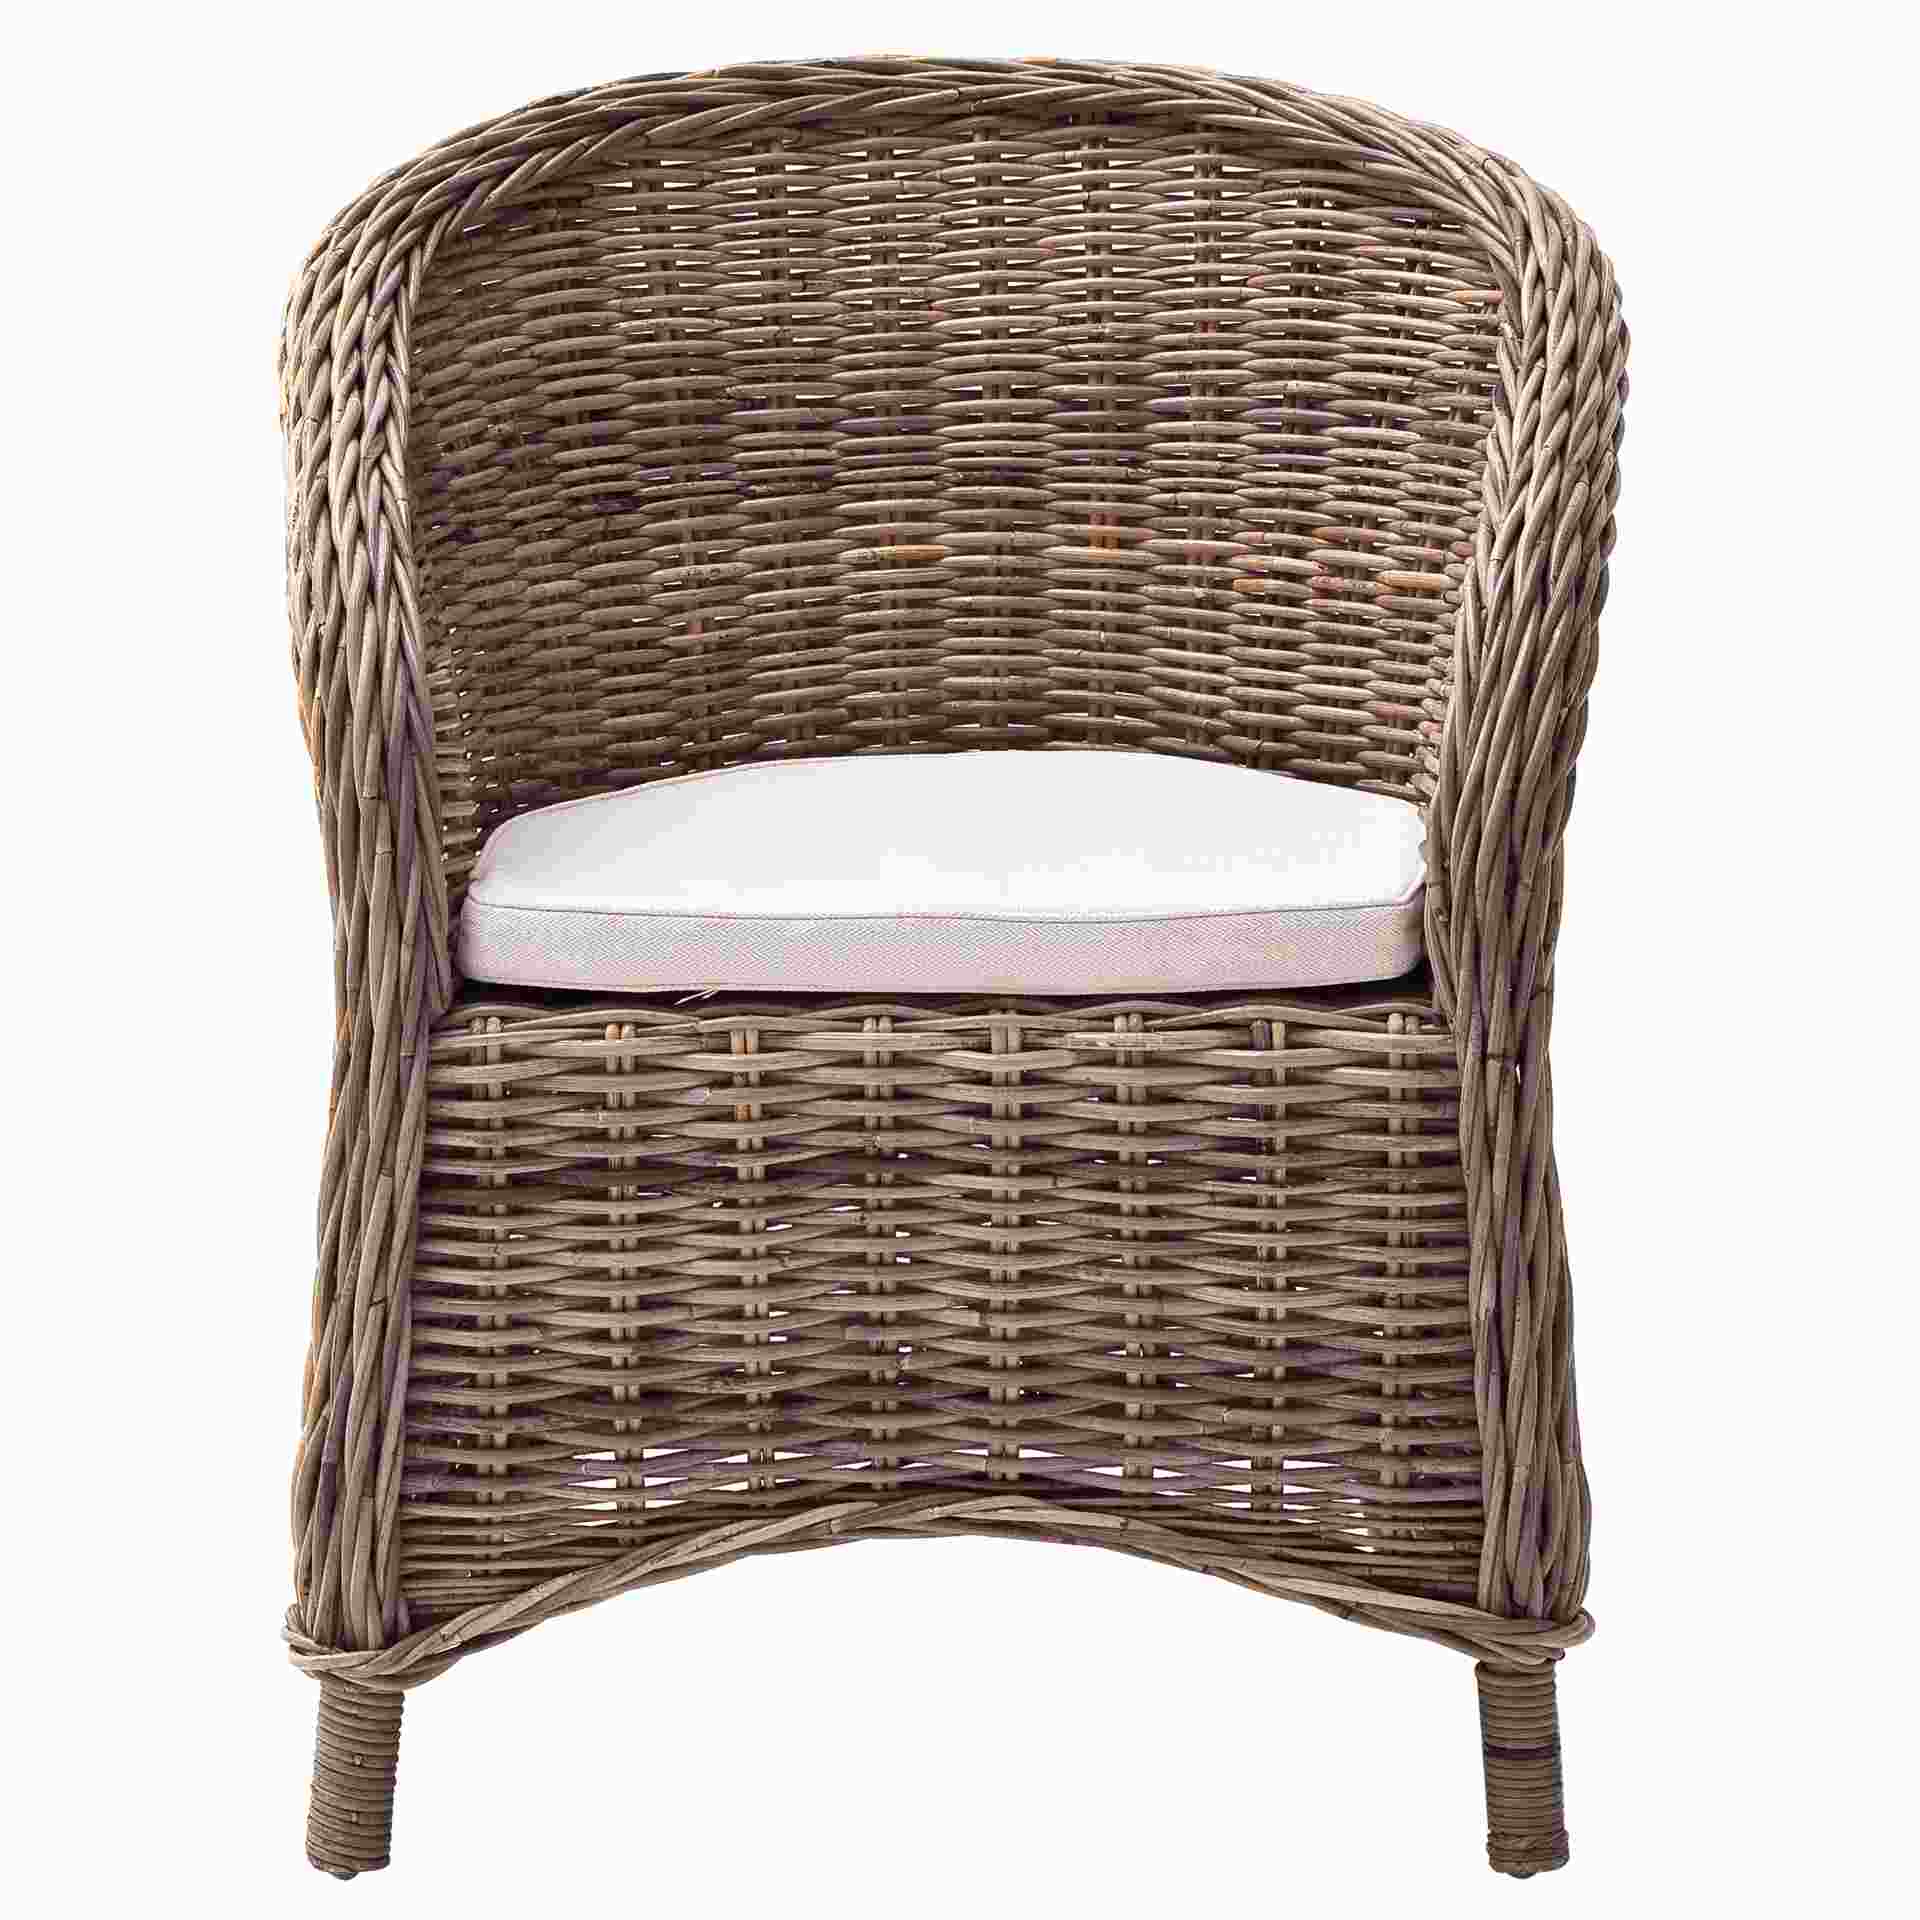 Der Stuhl Bonsun überzeugt mit seinem Landhaus Stil. Gefertigt wurde er aus Kabu Rattan, welches einen natürlichen Farbton besitzt. Der Stuhl verfügt über eine Armlehne. Die Sitzhöhe beträgt beträgt 44 cm.